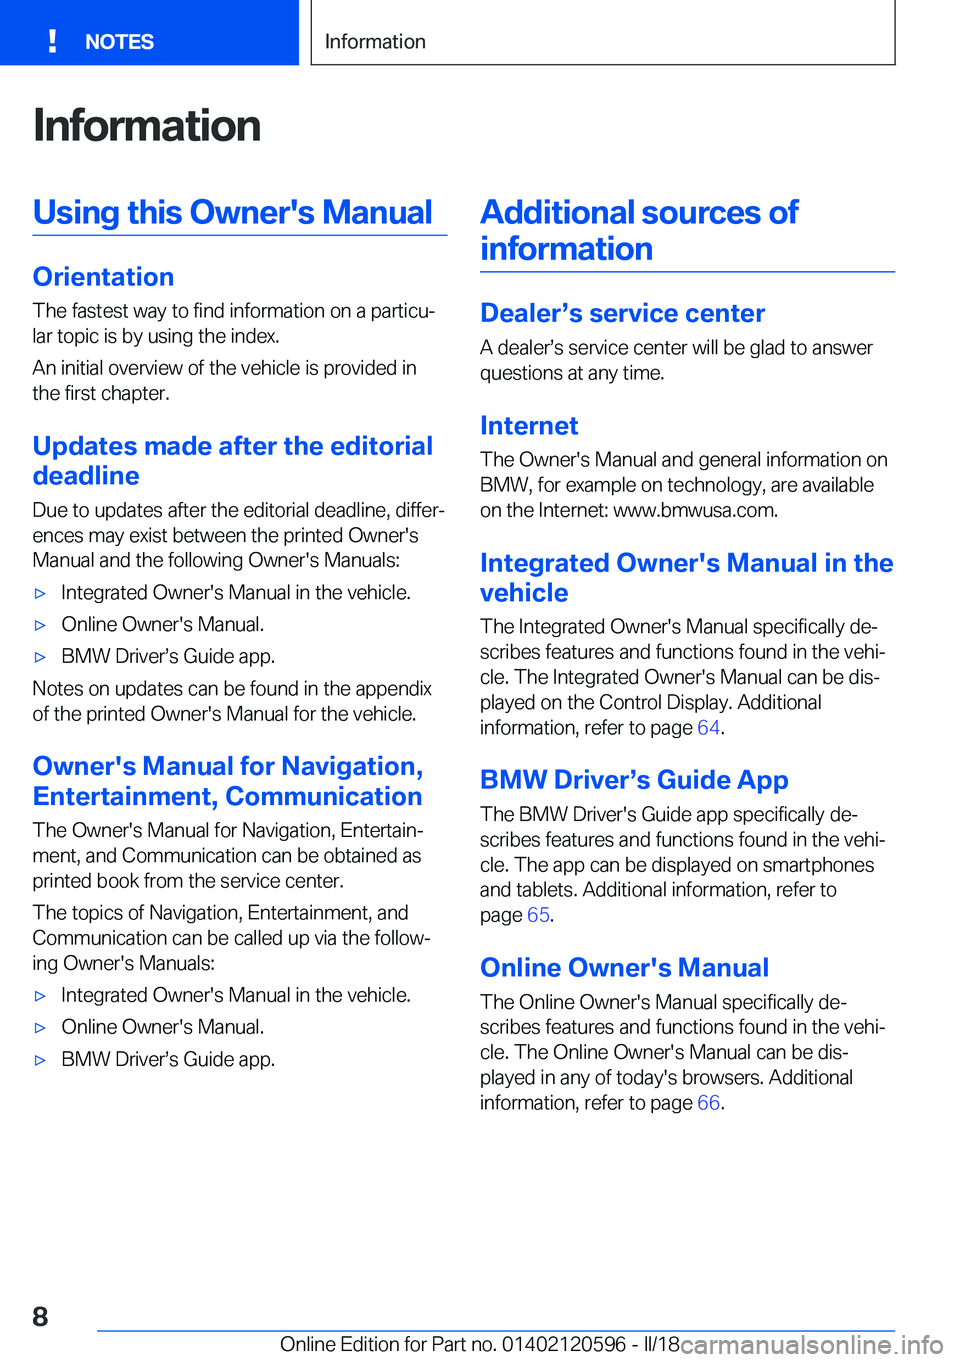 BMW X1 2018  Owners Manual �I�n�f�o�r�m�a�t�i�o�n�U�s�i�n�g��t�h�i�s��O�w�n�e�r�'�s��M�a�n�u�a�l
�O�r�i�e�n�t�a�t�i�o�n�T�h�e� �f�a�s�t�e�s�t� �w�a�y� �t�o� �f�i�n�d� �i�n�f�o�r�m�a�t�i�o�n� �o�n� �a� �p�a�r�t�i�c�uj�l�